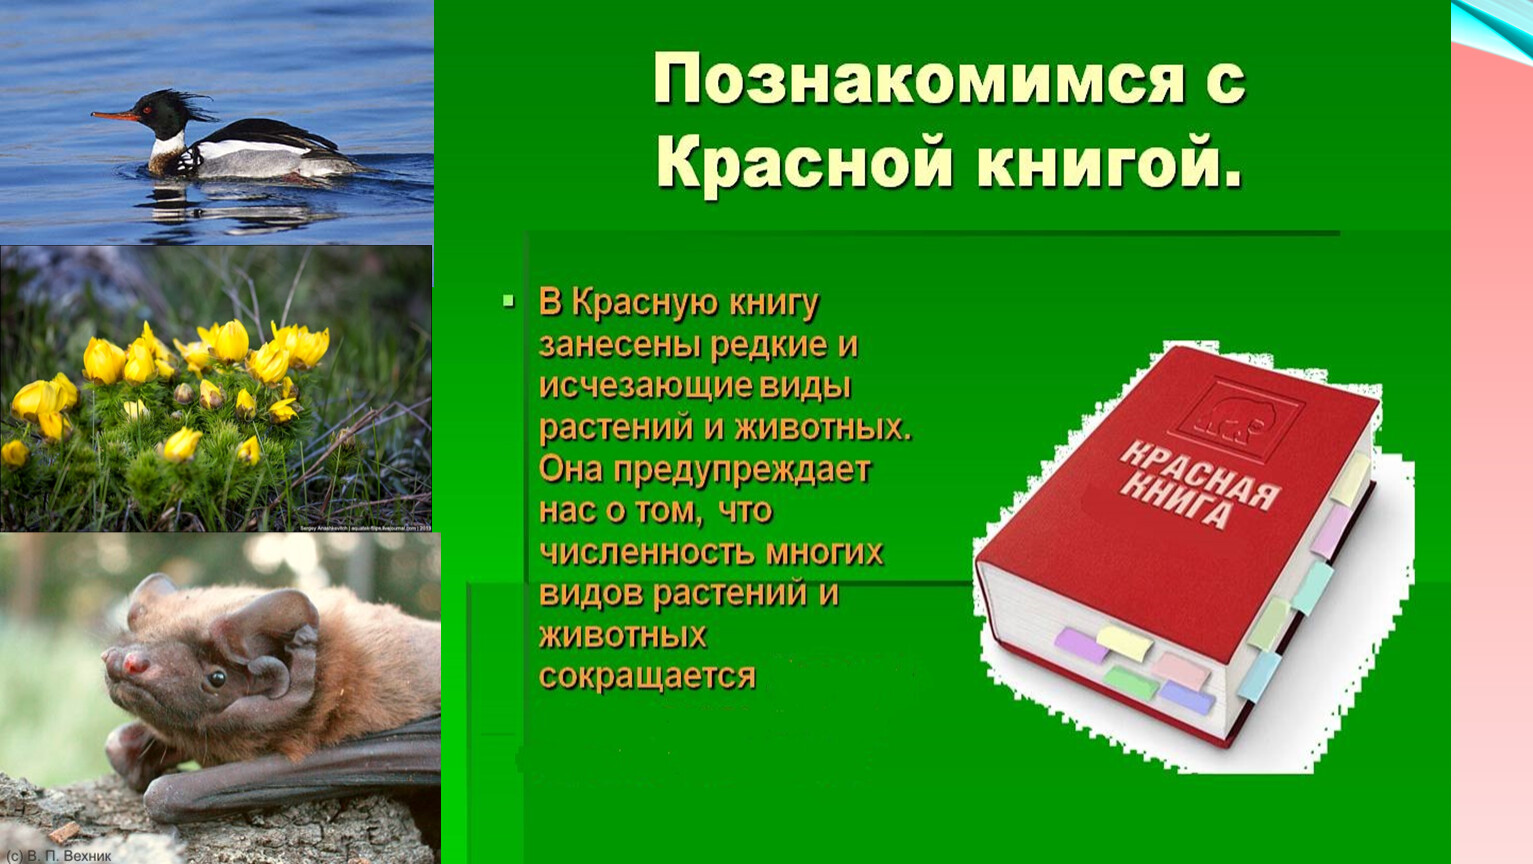 Животные красной книги Крыма